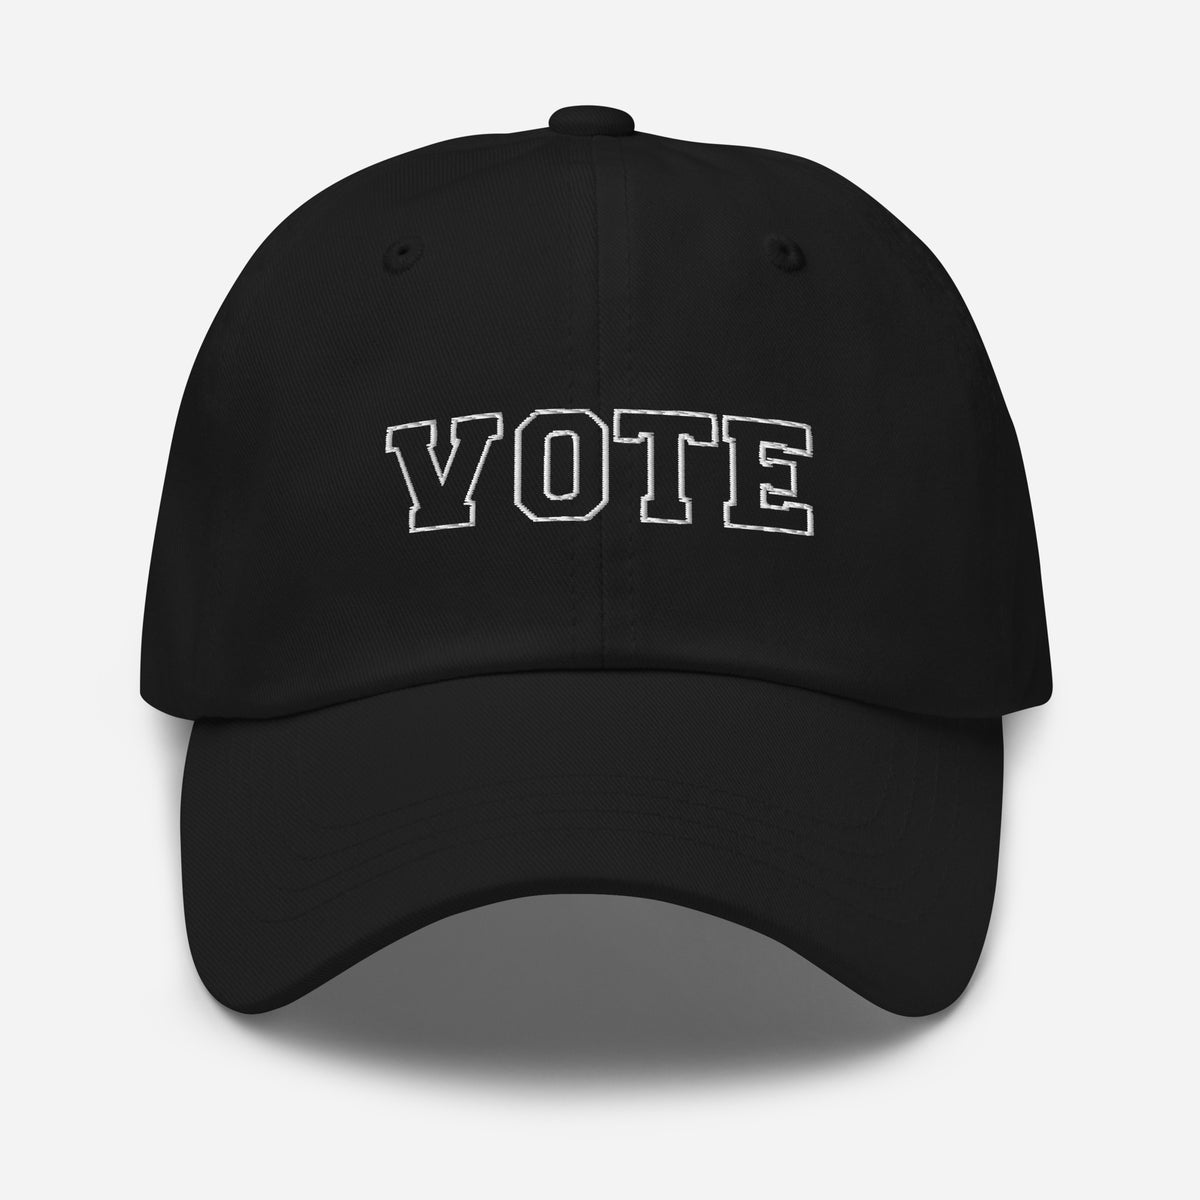 Vote Hat - Chino Twill